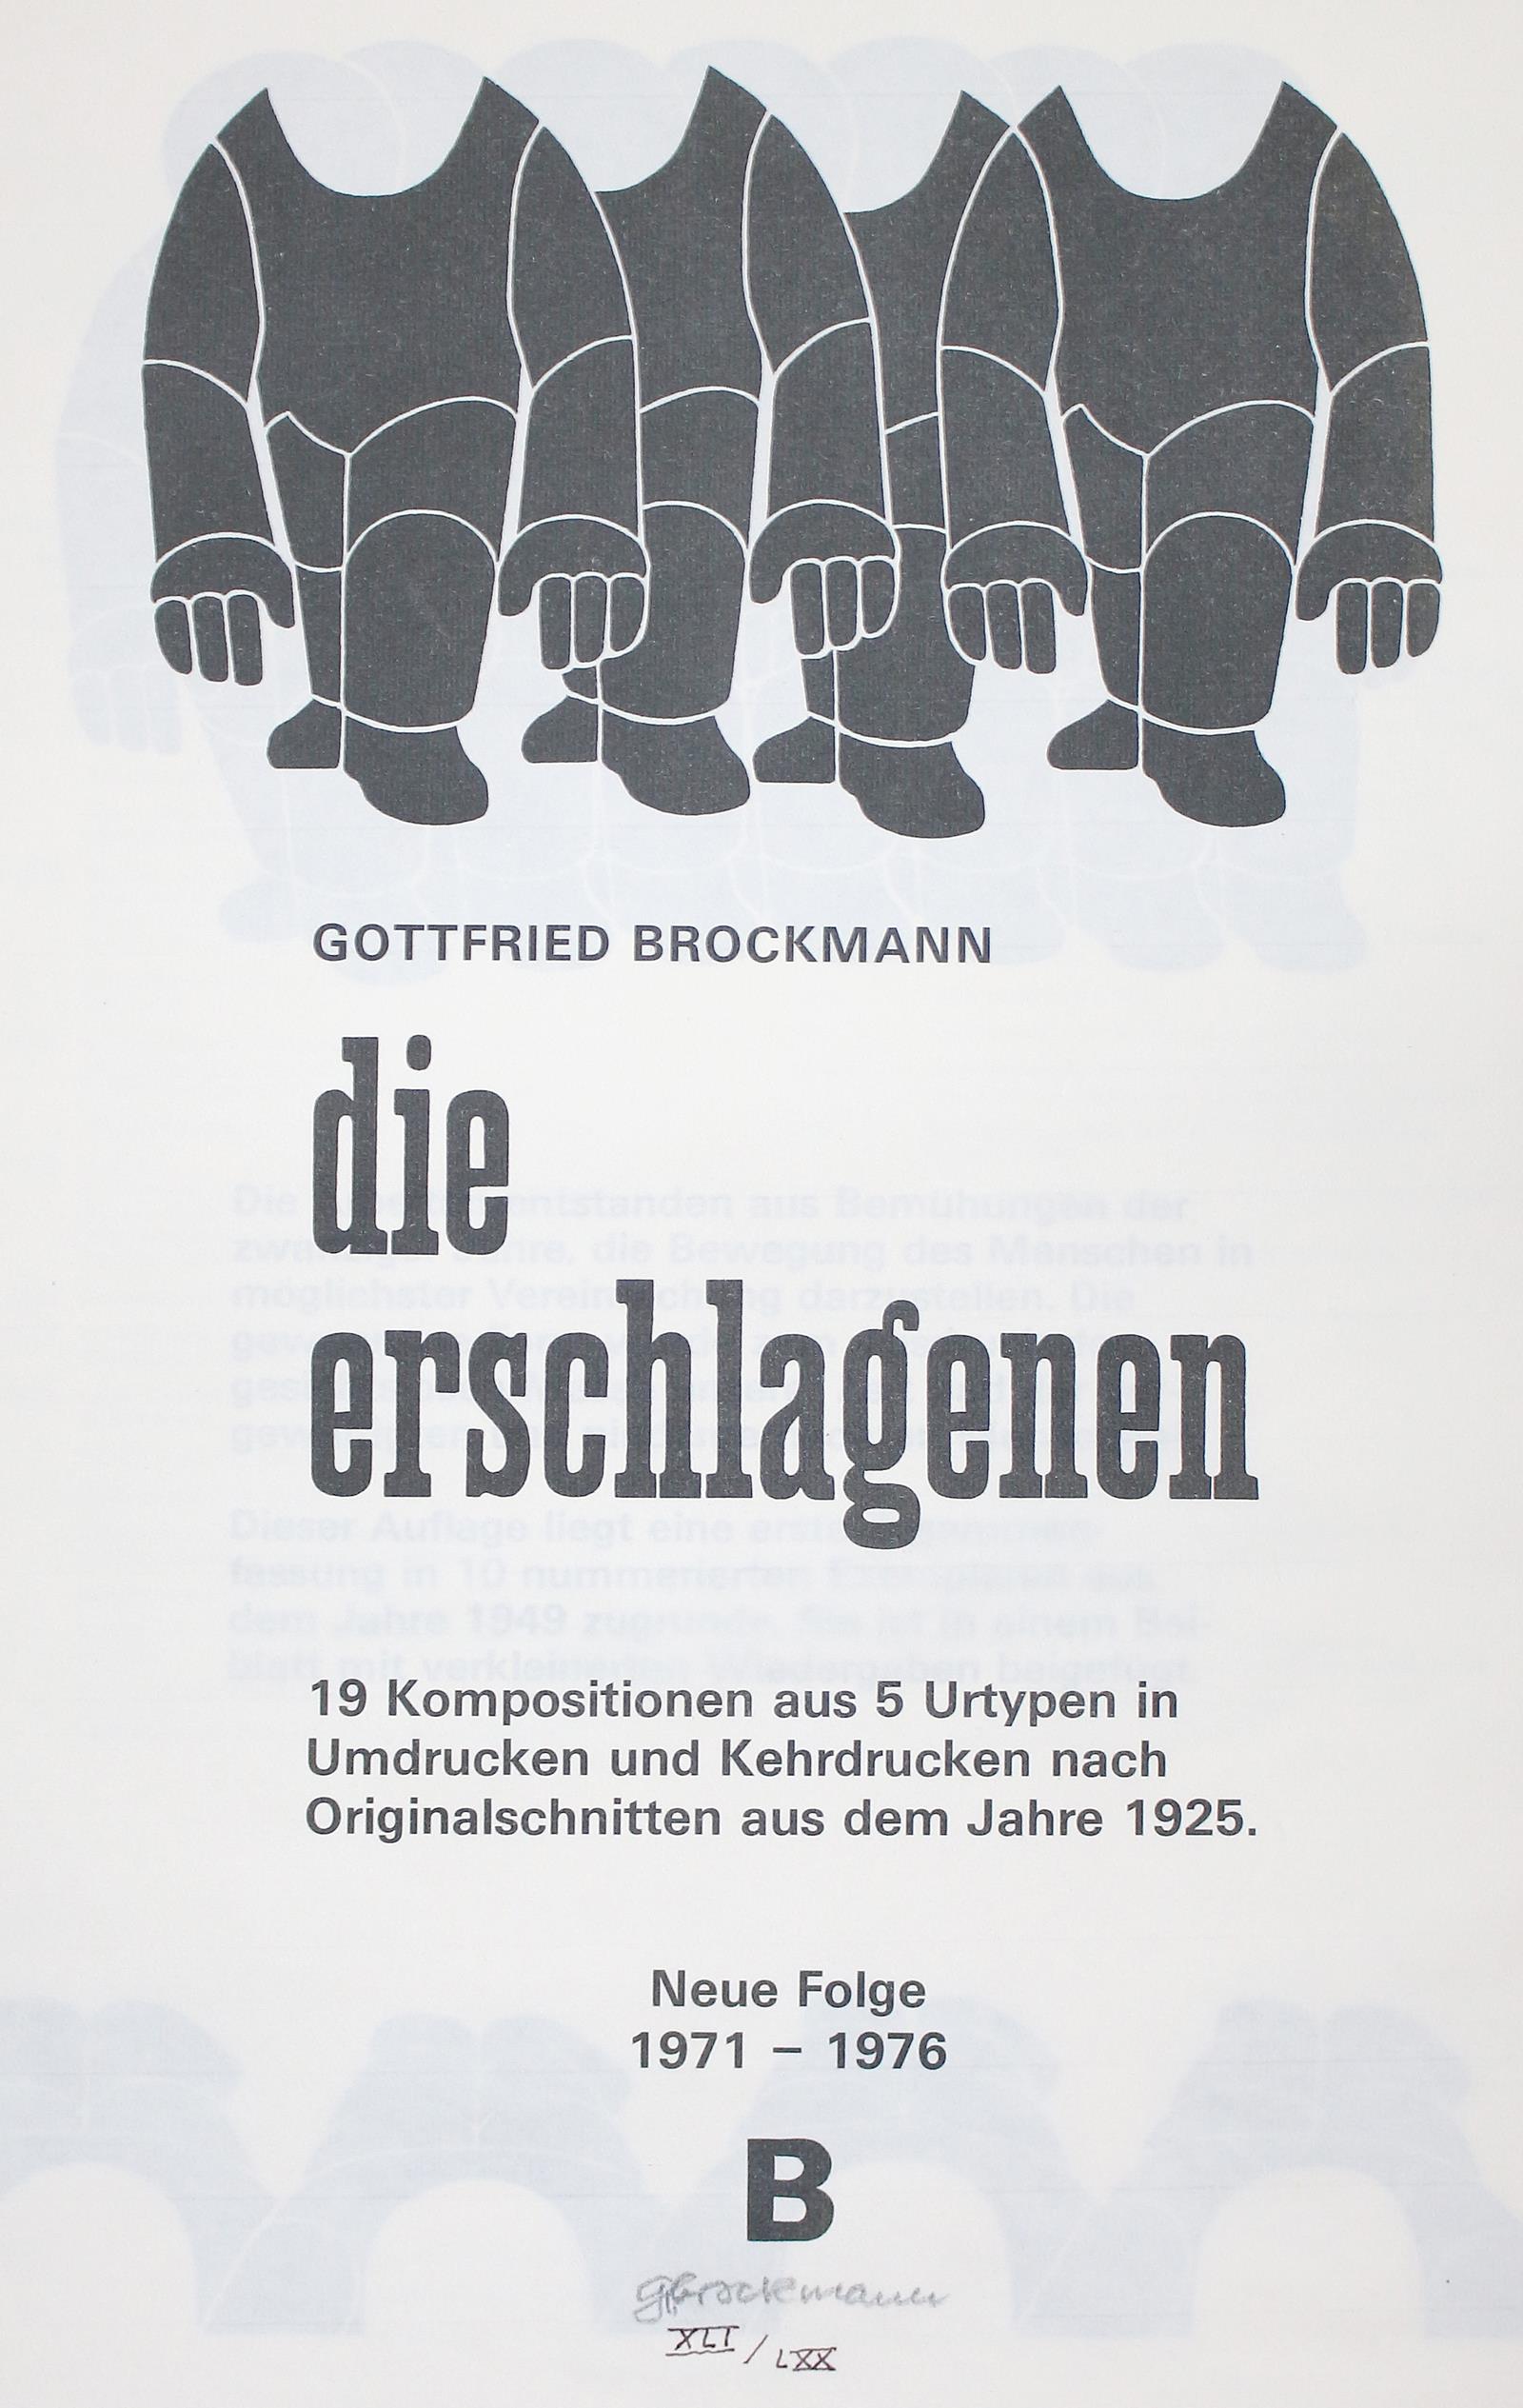 Brockmann, Gottfried | Bild Nr.2